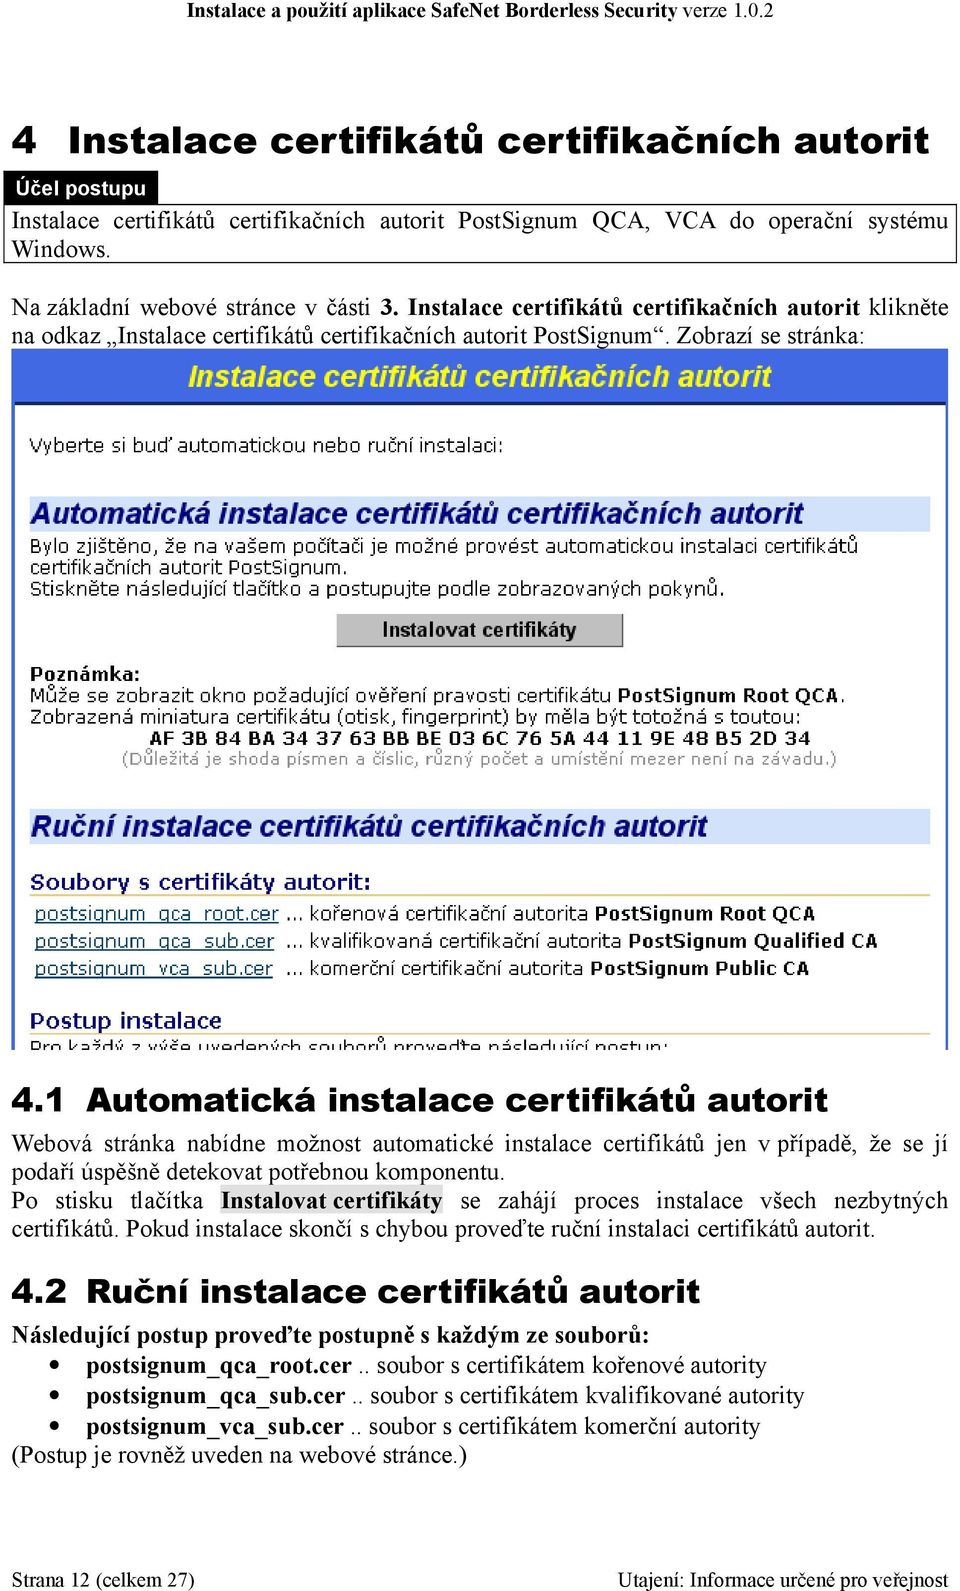 1 Automatická instalace certifikátů autorit Webová stránka nabídne možnost automatické instalace certifikátů jen v případě, že se jí podaří úspěšně detekovat potřebnou komponentu.